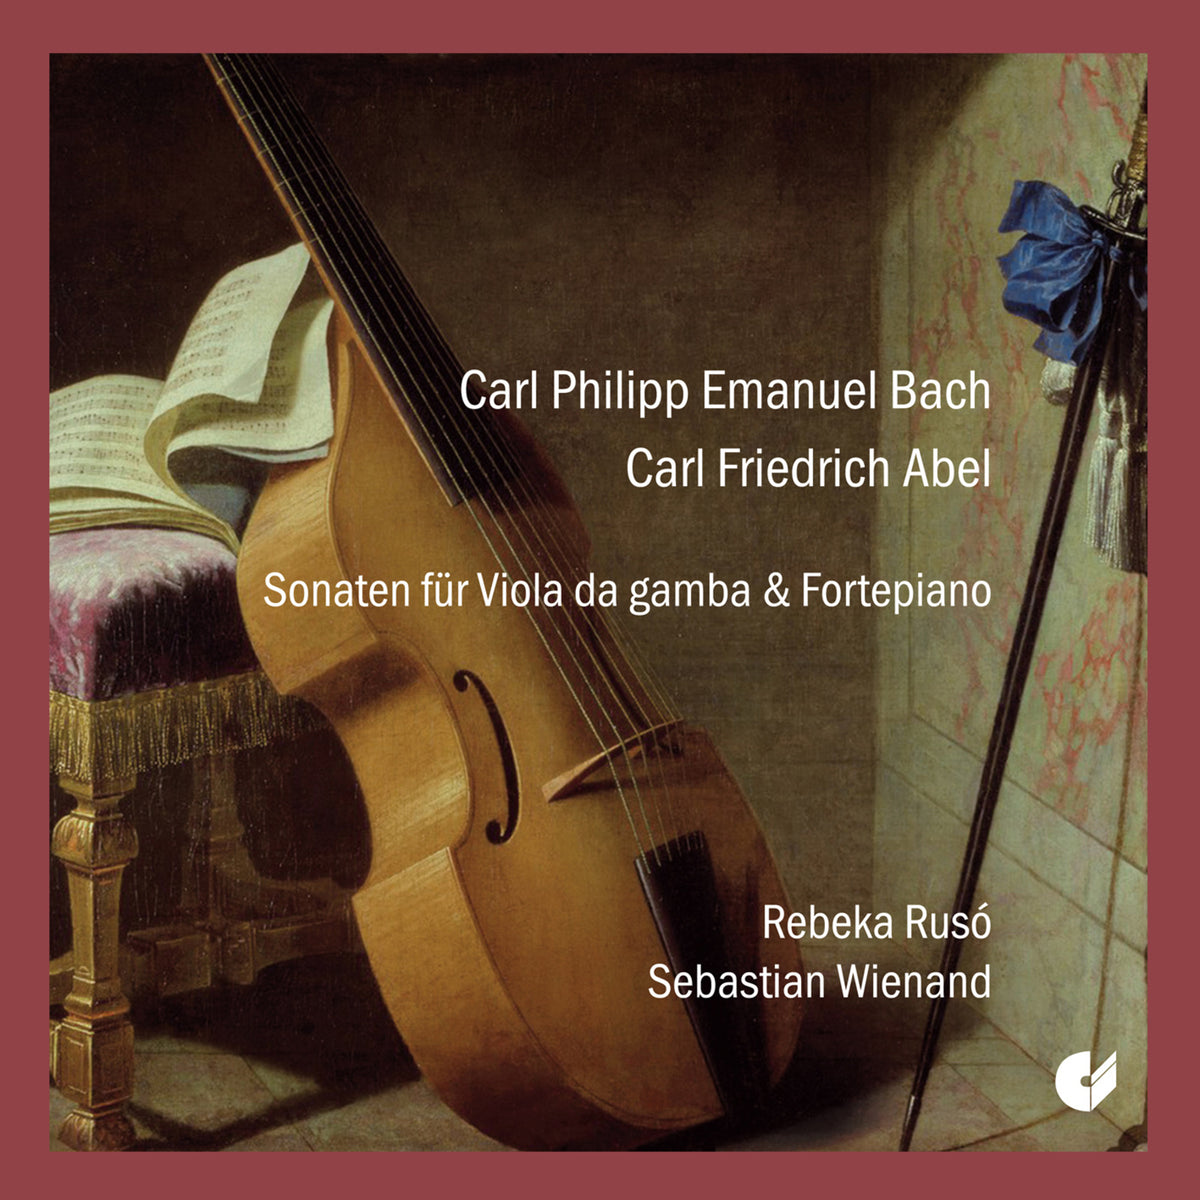 Rebeka Ruso; Sebastian Wienand - C.P.E. Bach & C.F. Abel - Sonatas for Viola da Gamba & Fortepiano - CHE02322